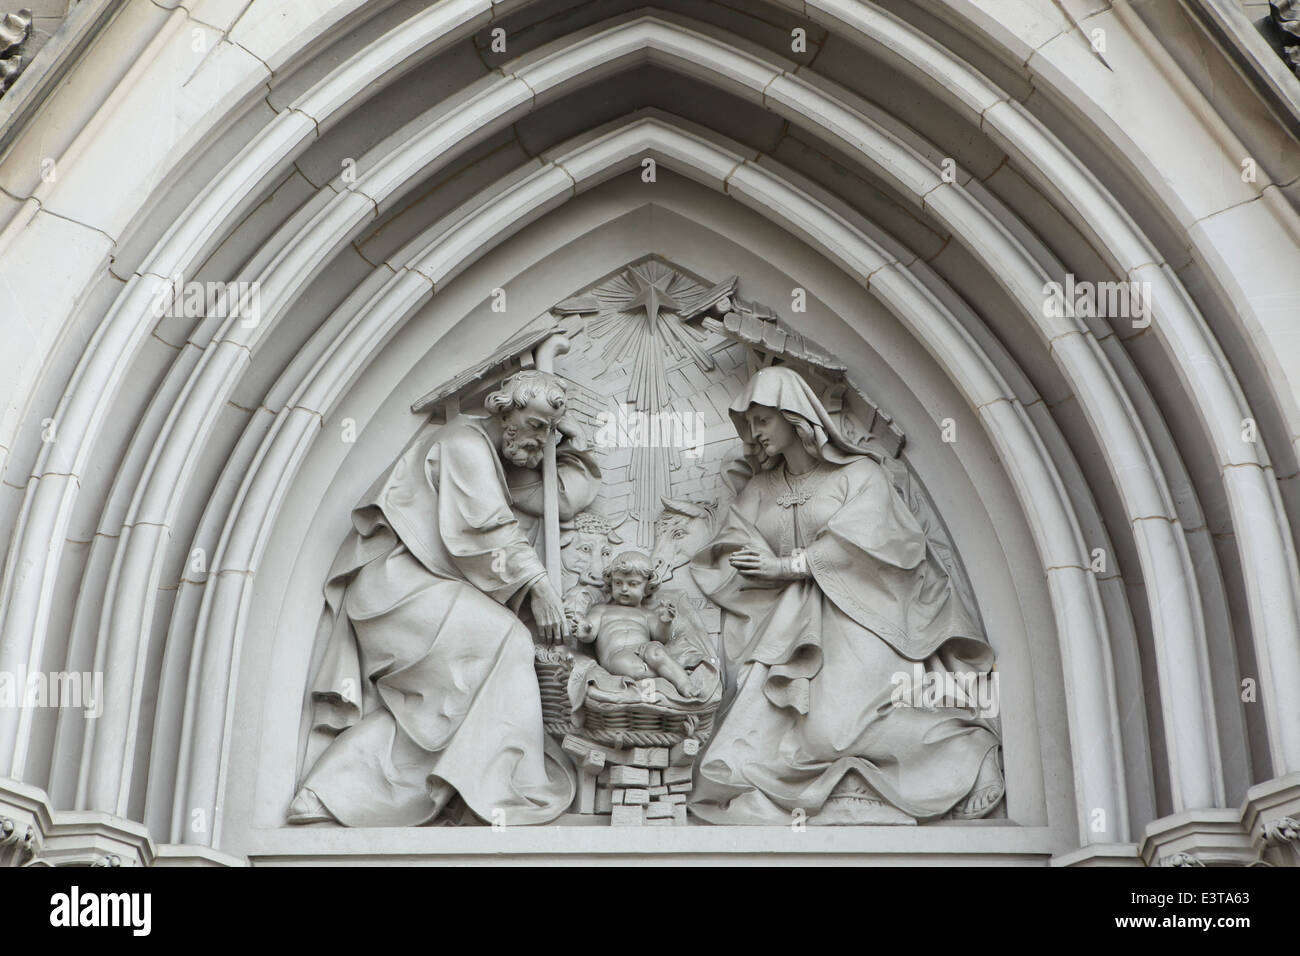 La nativité. Plus de secours néo-gothique de la porte principale de la cathédrale de Saint Venceslas à Olomouc, République tchèque. Banque D'Images